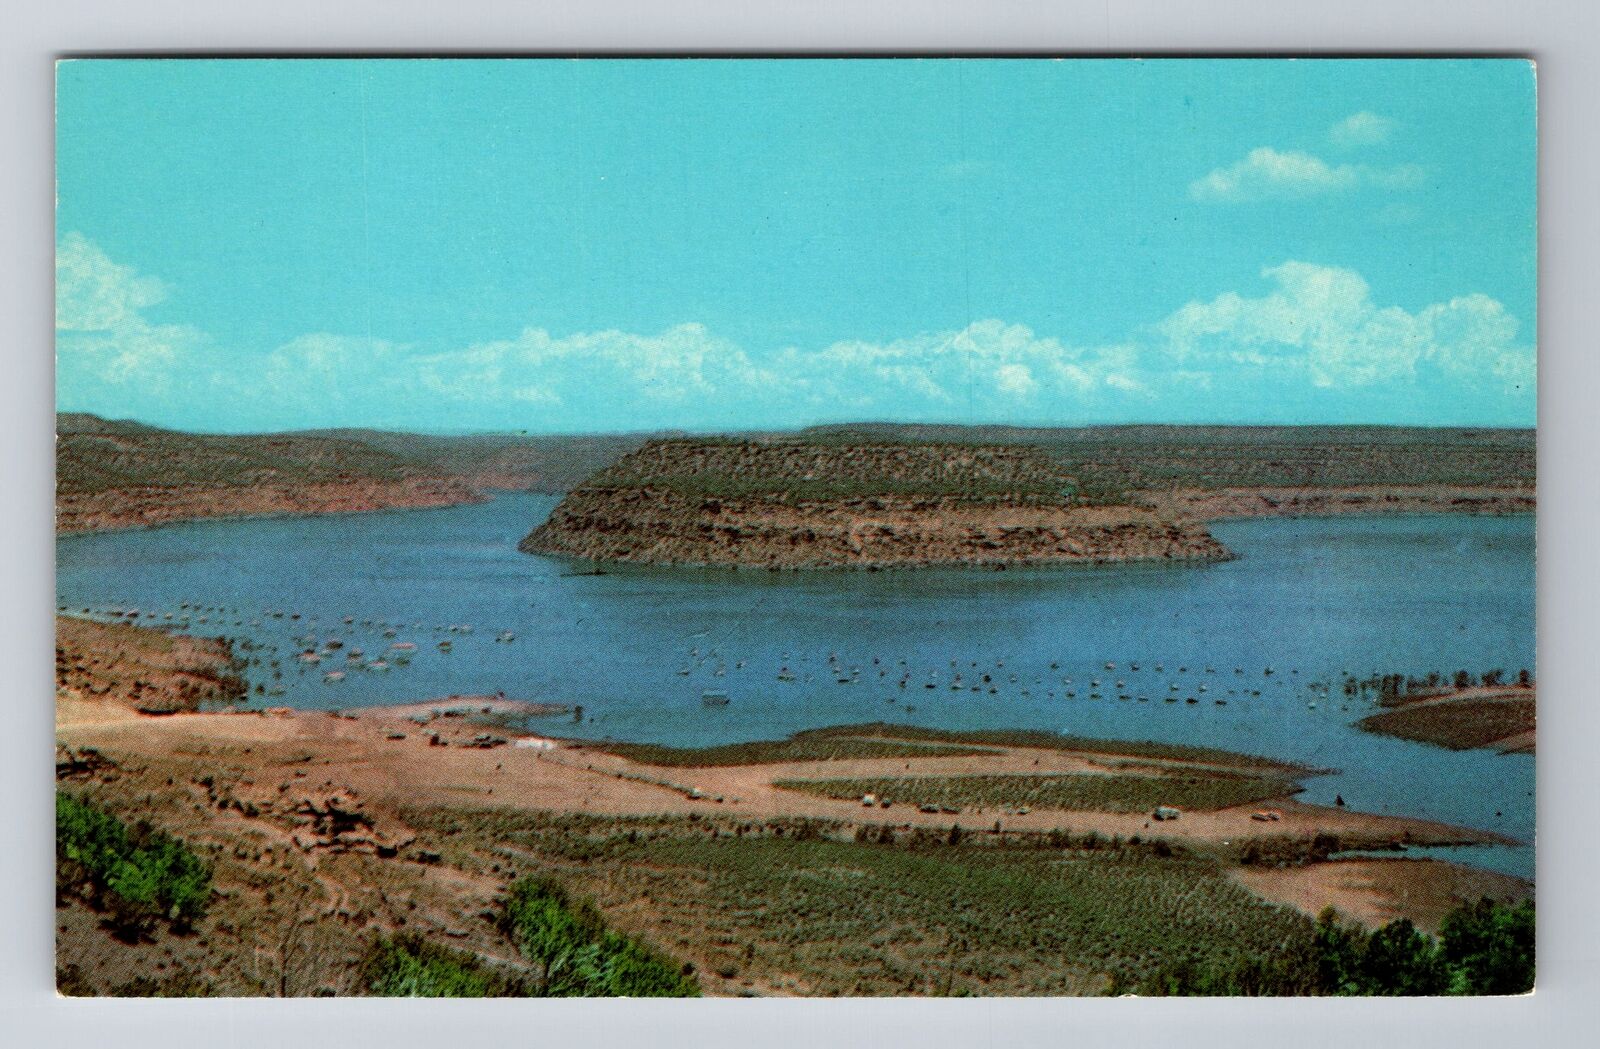 NM-New Mexico, Navajo Dam Reservoir, Antique, Vintage Souvenir Postcard